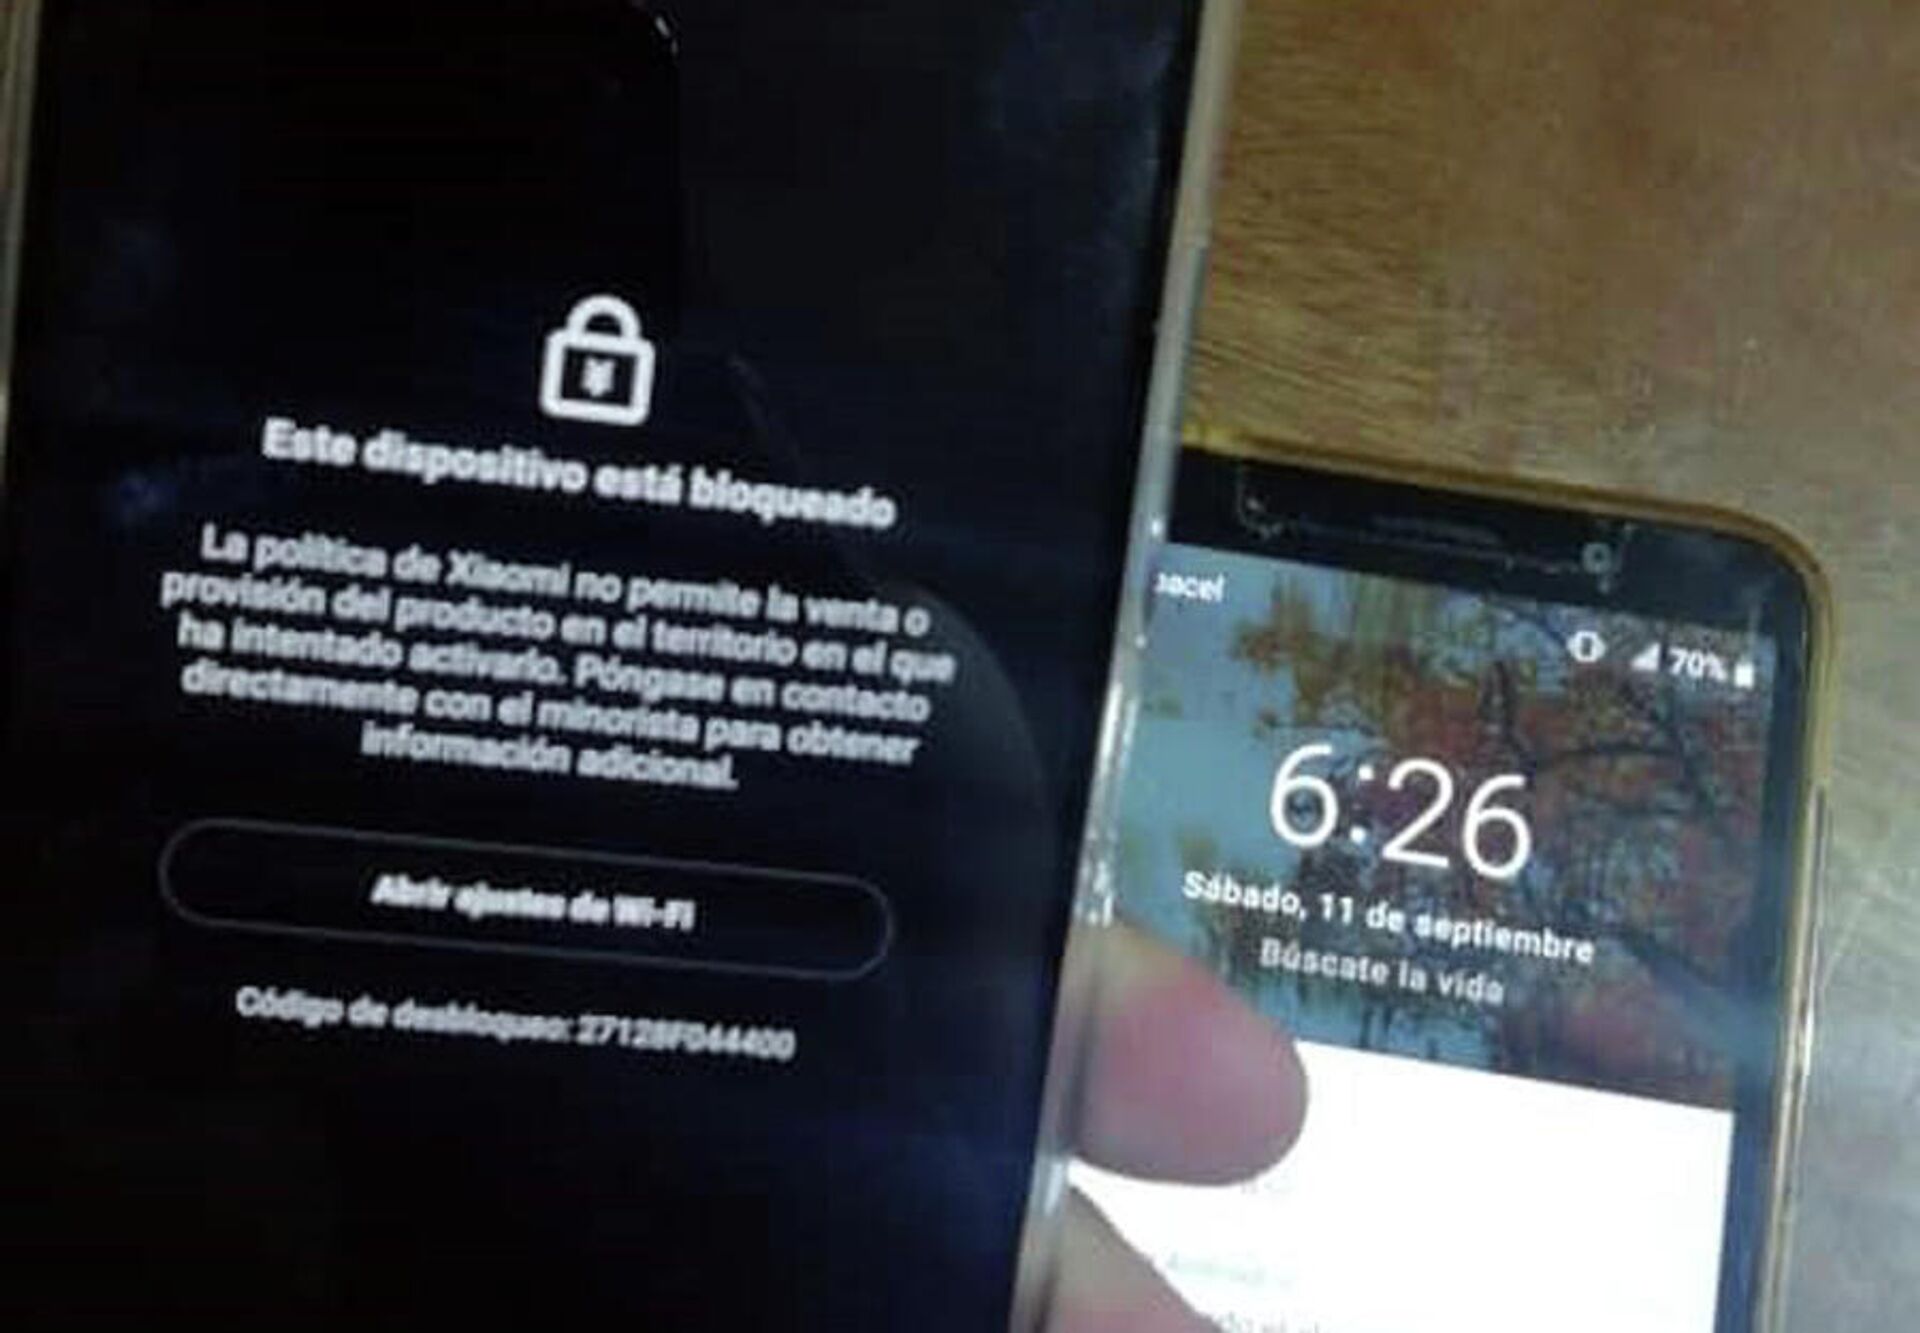 Copia de pantalla de teléfono Xiaomi bloqueado en Cuba - Sputnik Mundo, 1920, 12.09.2021